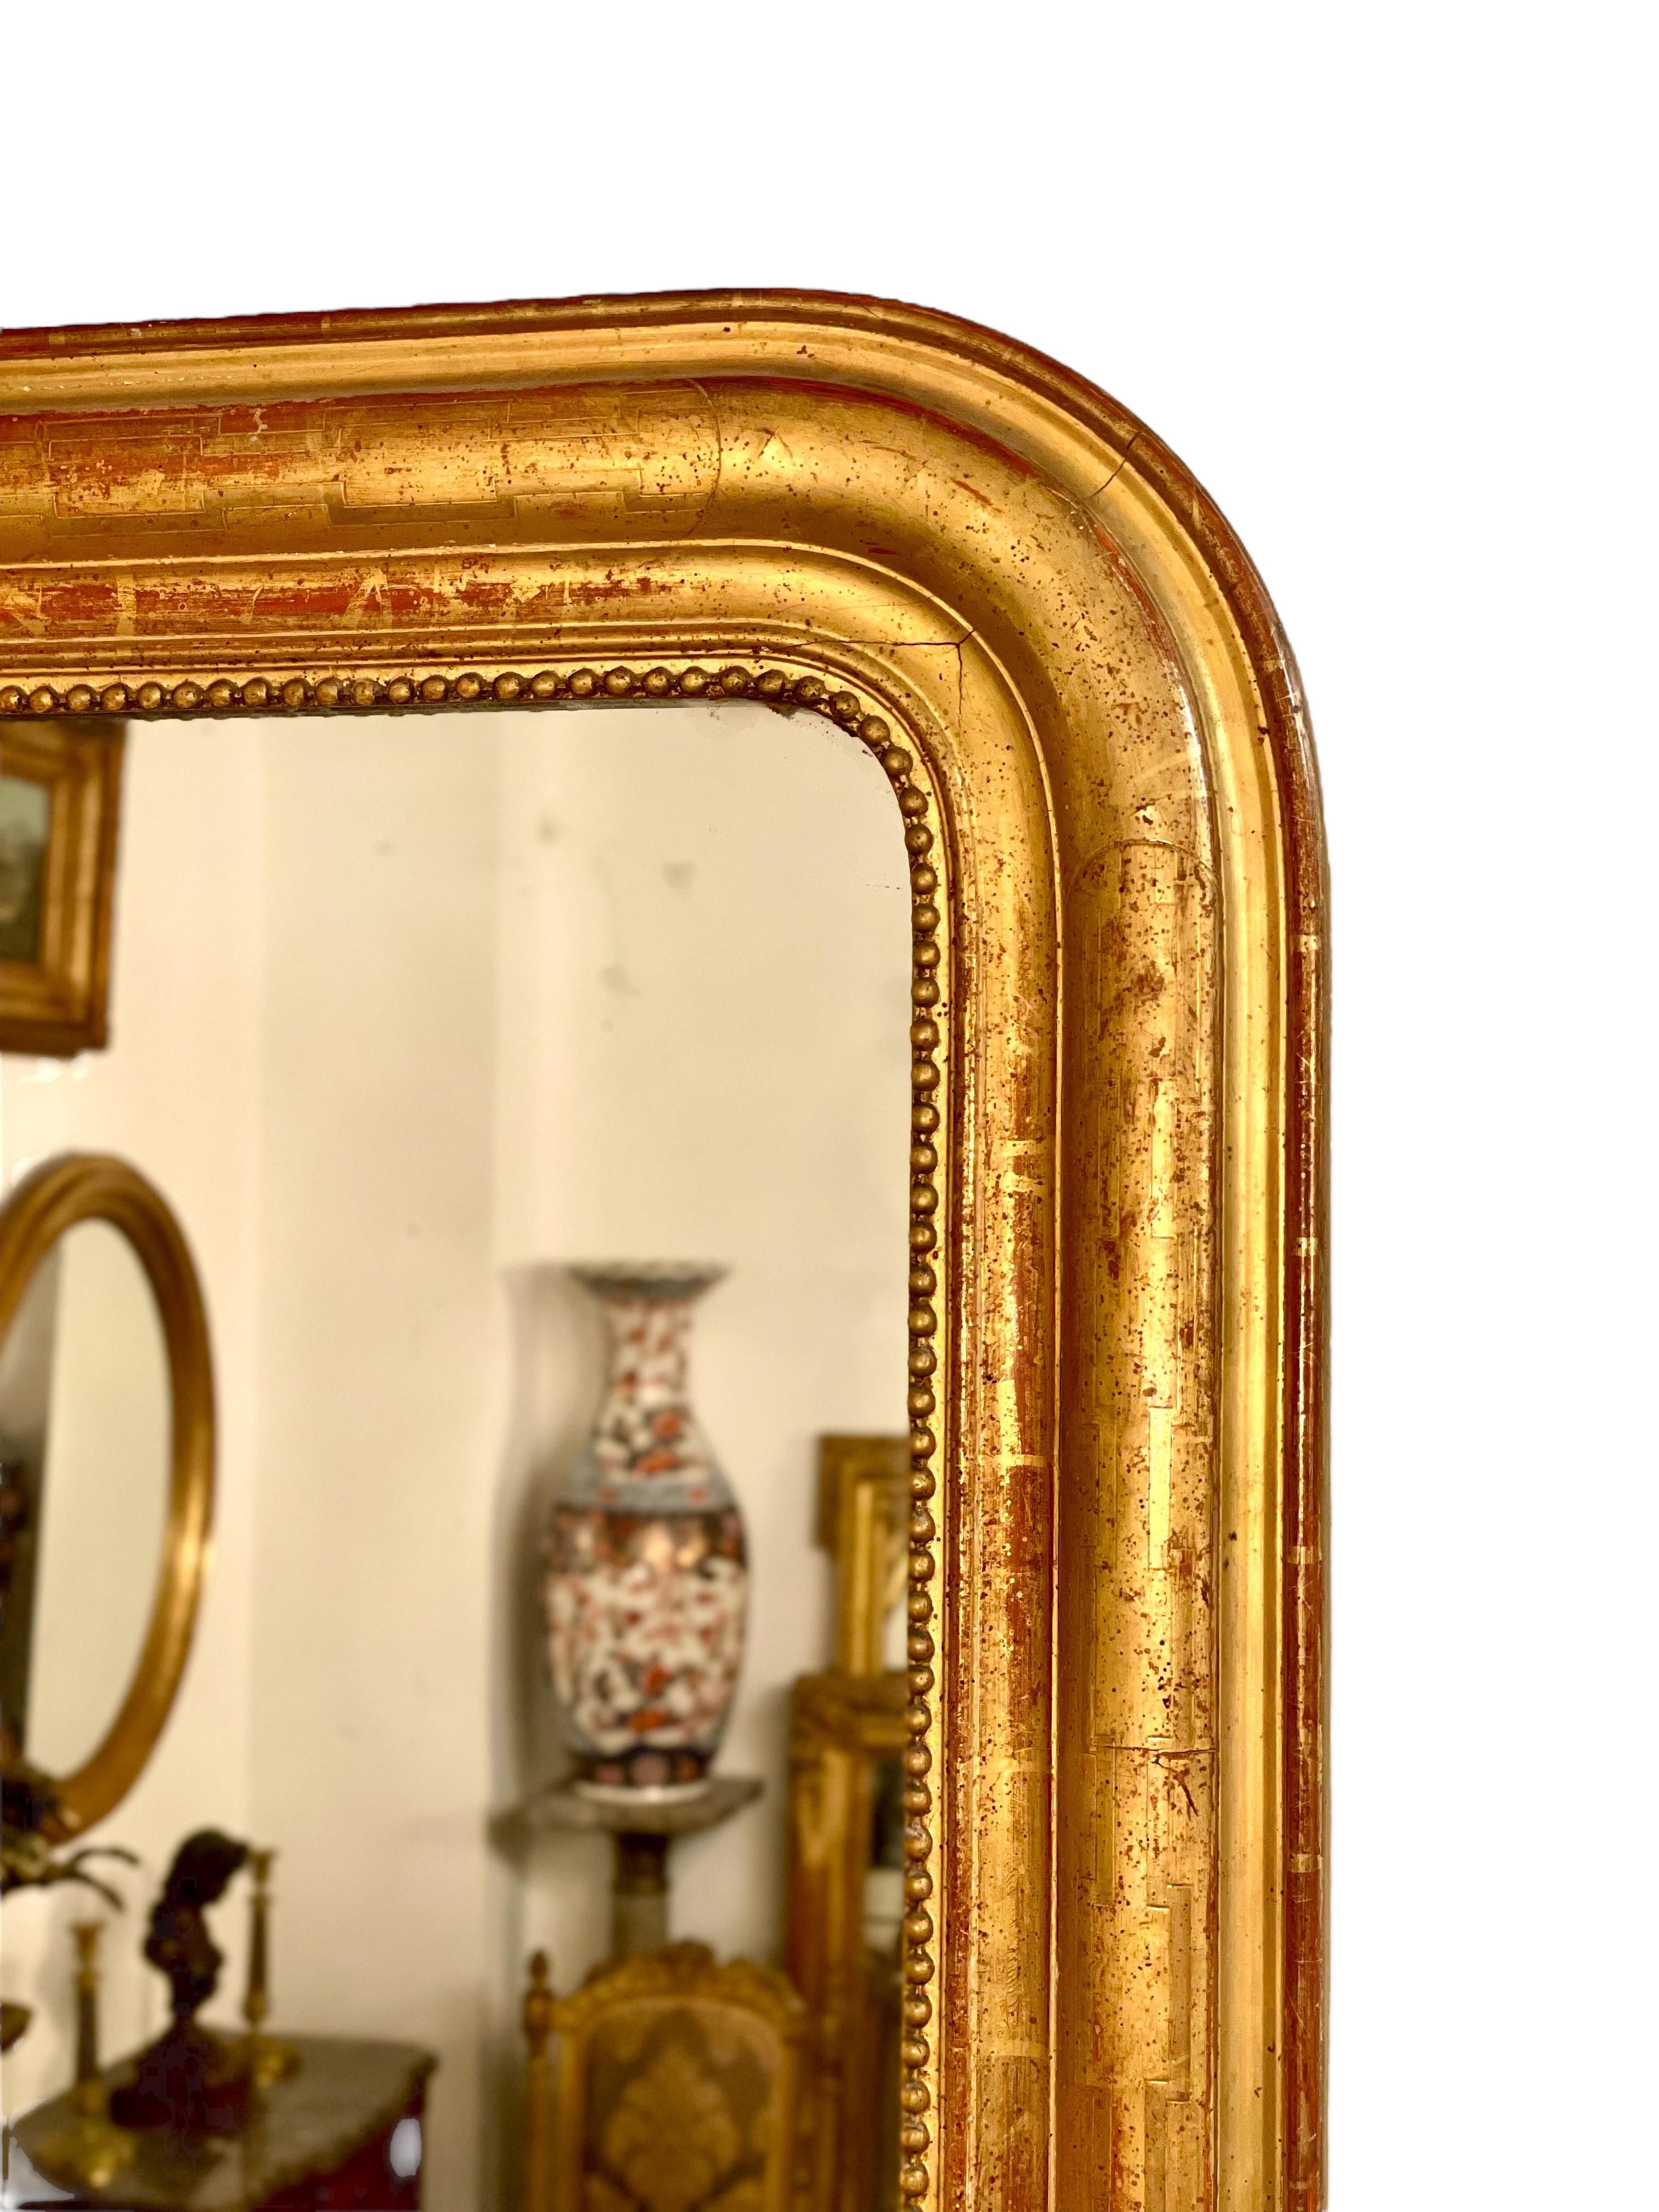 Un beau grand miroir mural doré de Louis Philippe, avec les coins supérieurs incurvés typiques de l'époque, et un beau cadre mouluré avec un motif géométrique gravé apparaissant à travers une feuille d'or brunie. Un délicat motif en forme de collier